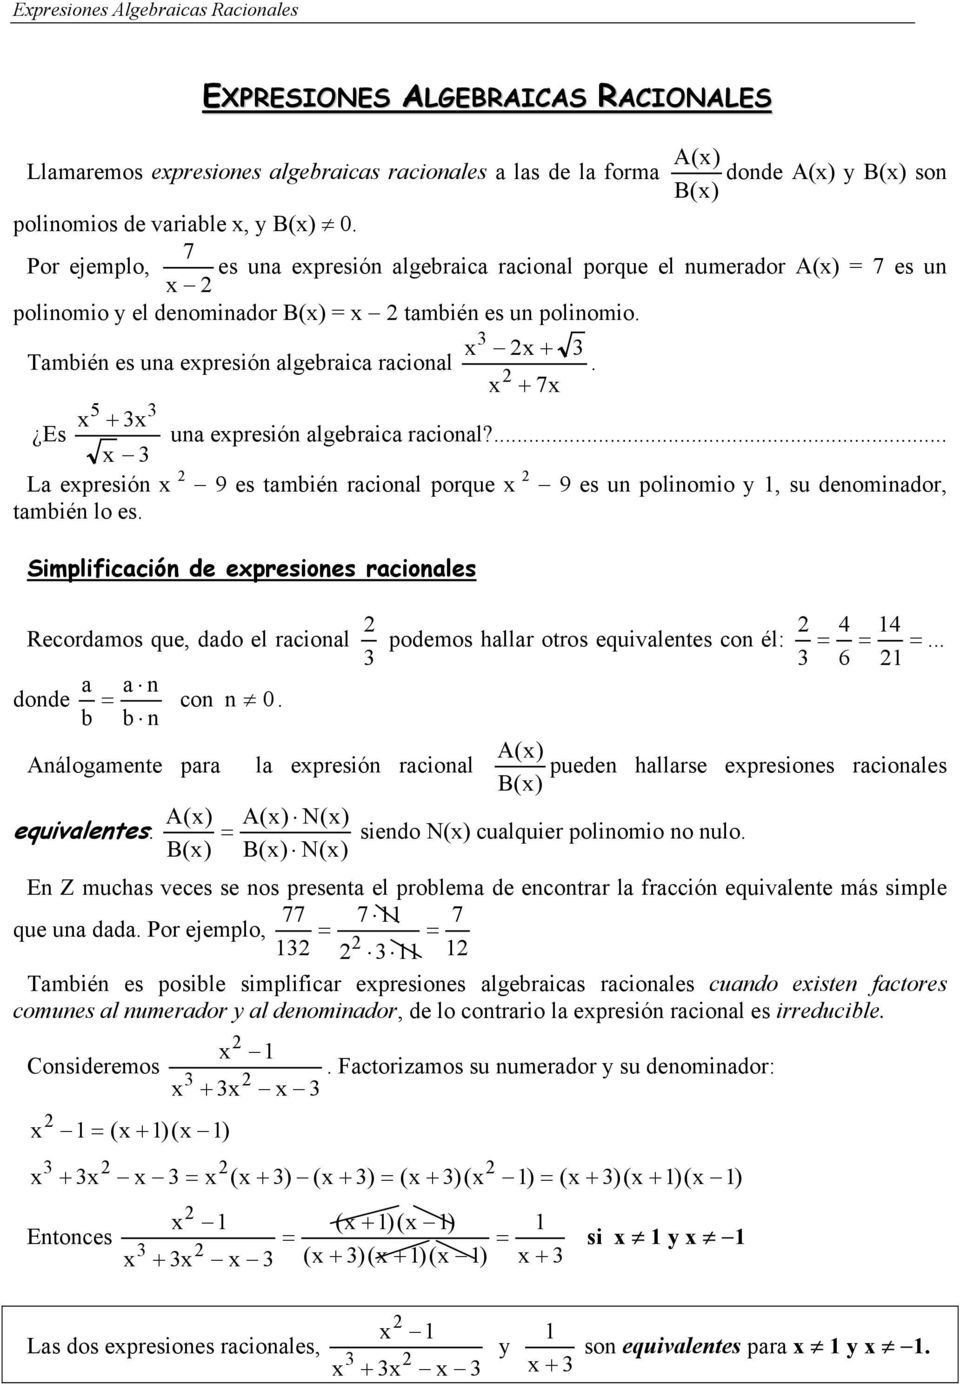 7.2: Multiplicar y dividir expresiones racionales